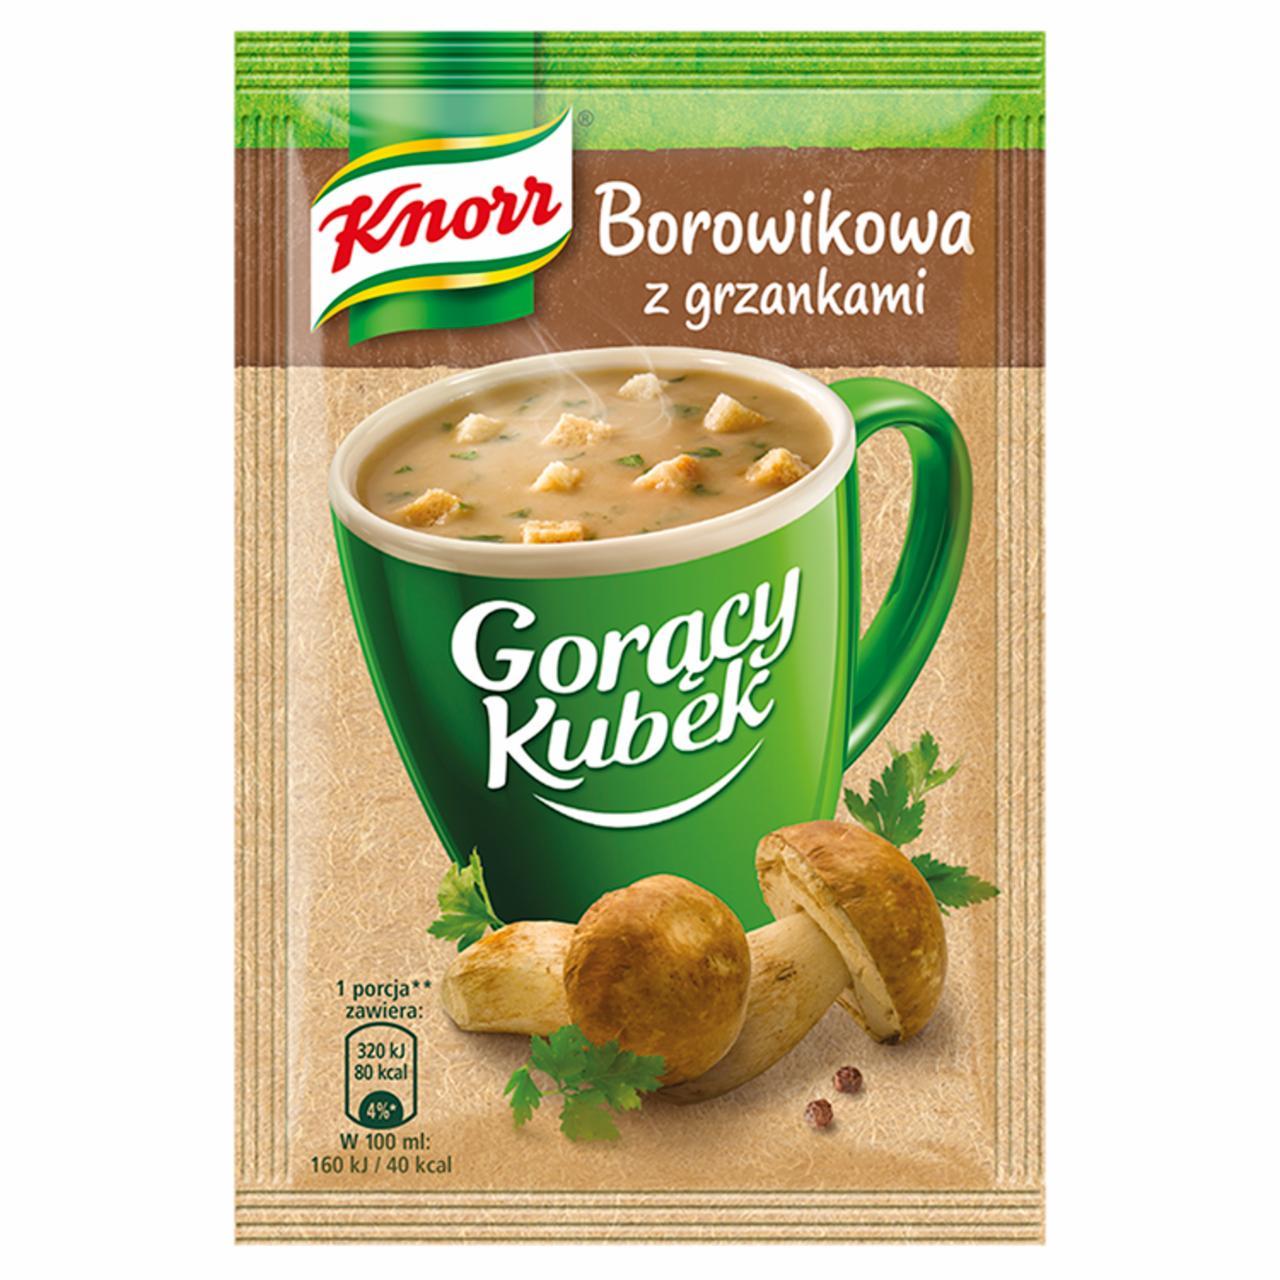 Fotografie - Borowikowa z grzankami goracy kubek Knorr